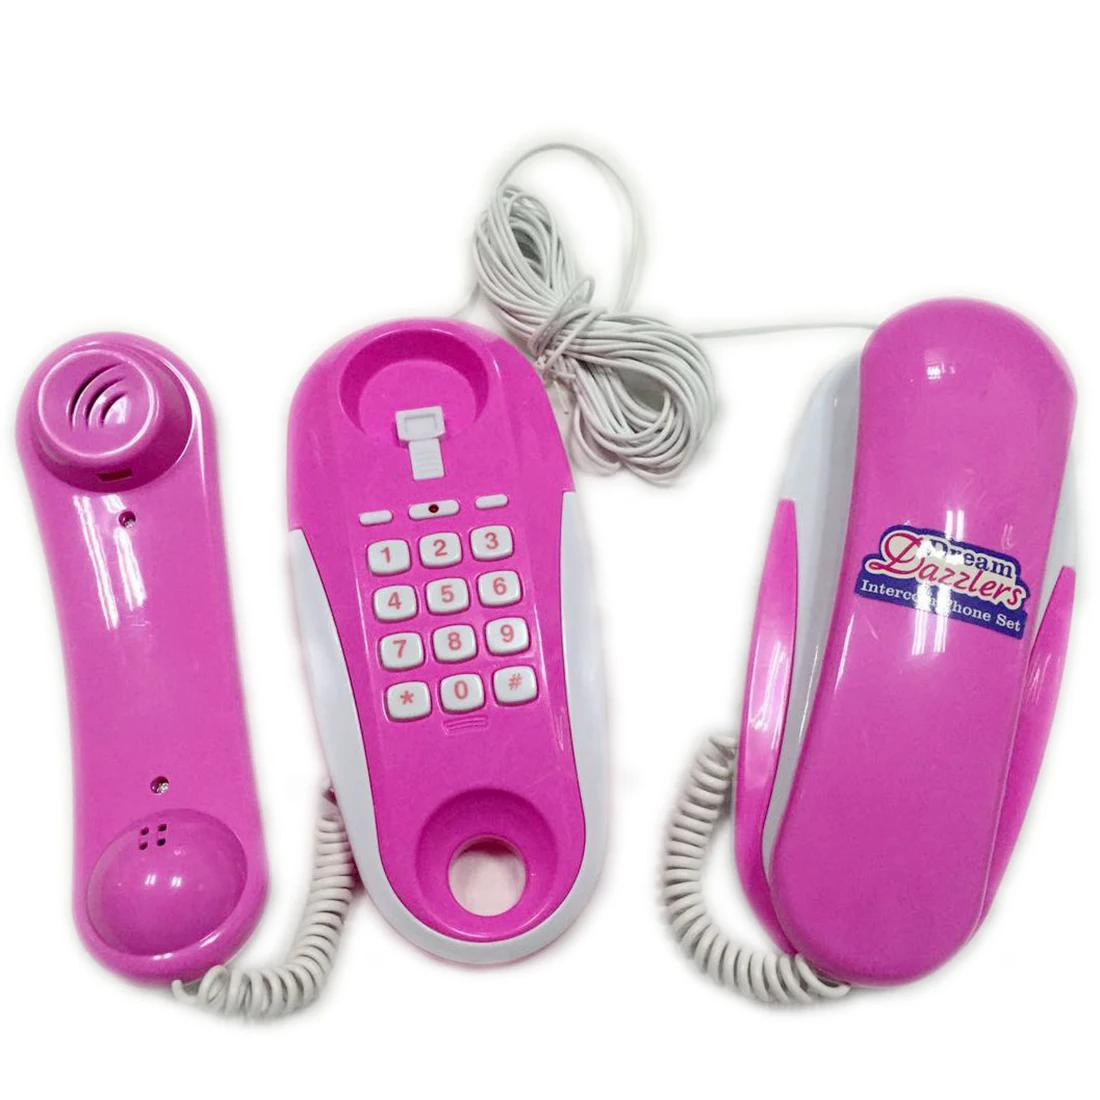 Дети ролевые игры домофон телефон игрушка Моделирование телефон игрушка с реальными звонками